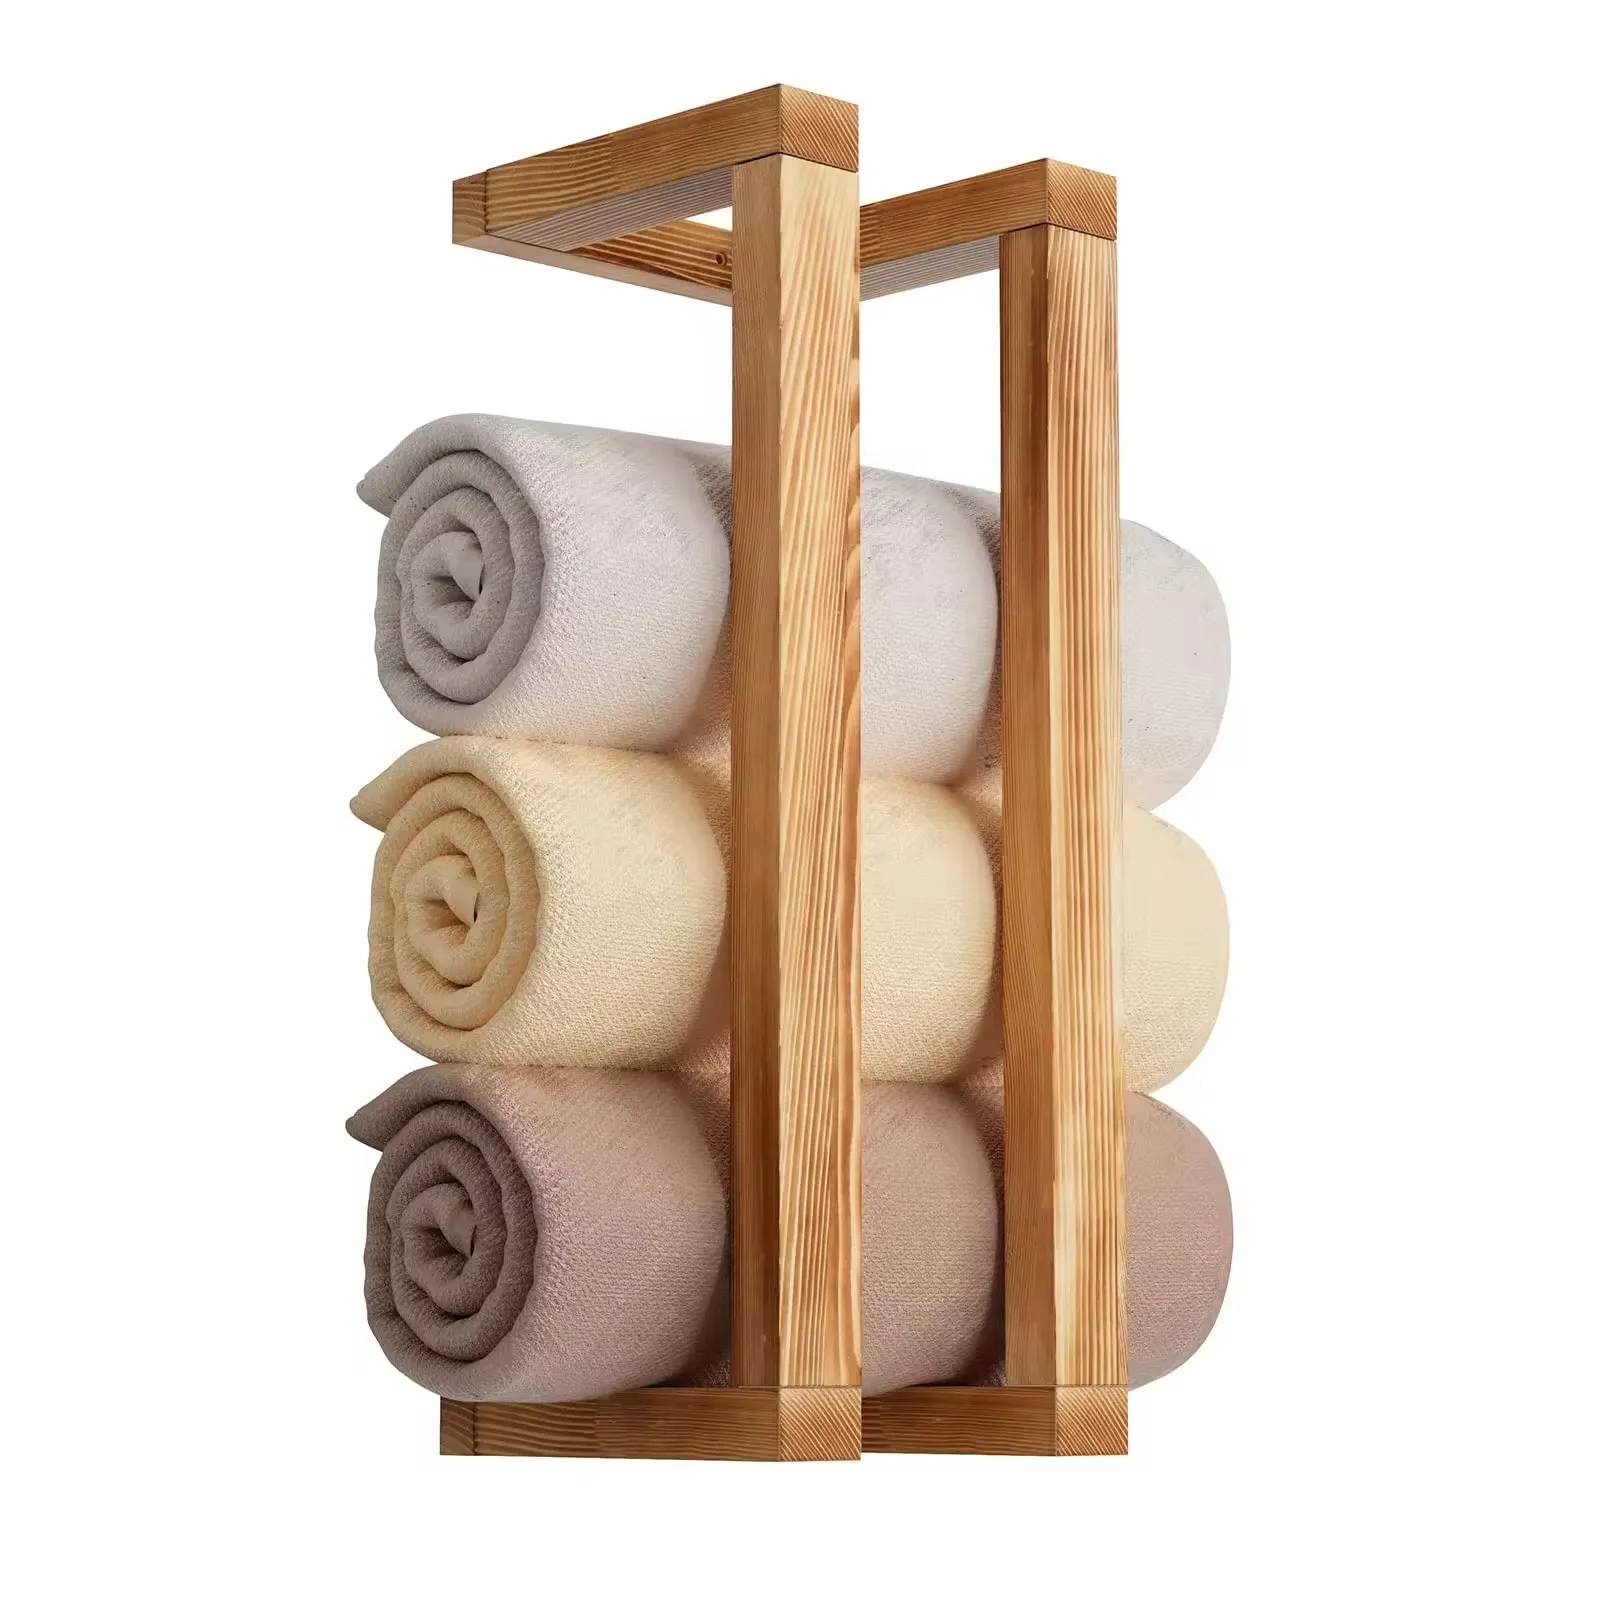 Ownswing Houten Handdoekenrek Voor Badkamer Wandgemonteerde Handdoekhouder Decoratieve Handdoekenplank Voor Organizer Deken Opslag